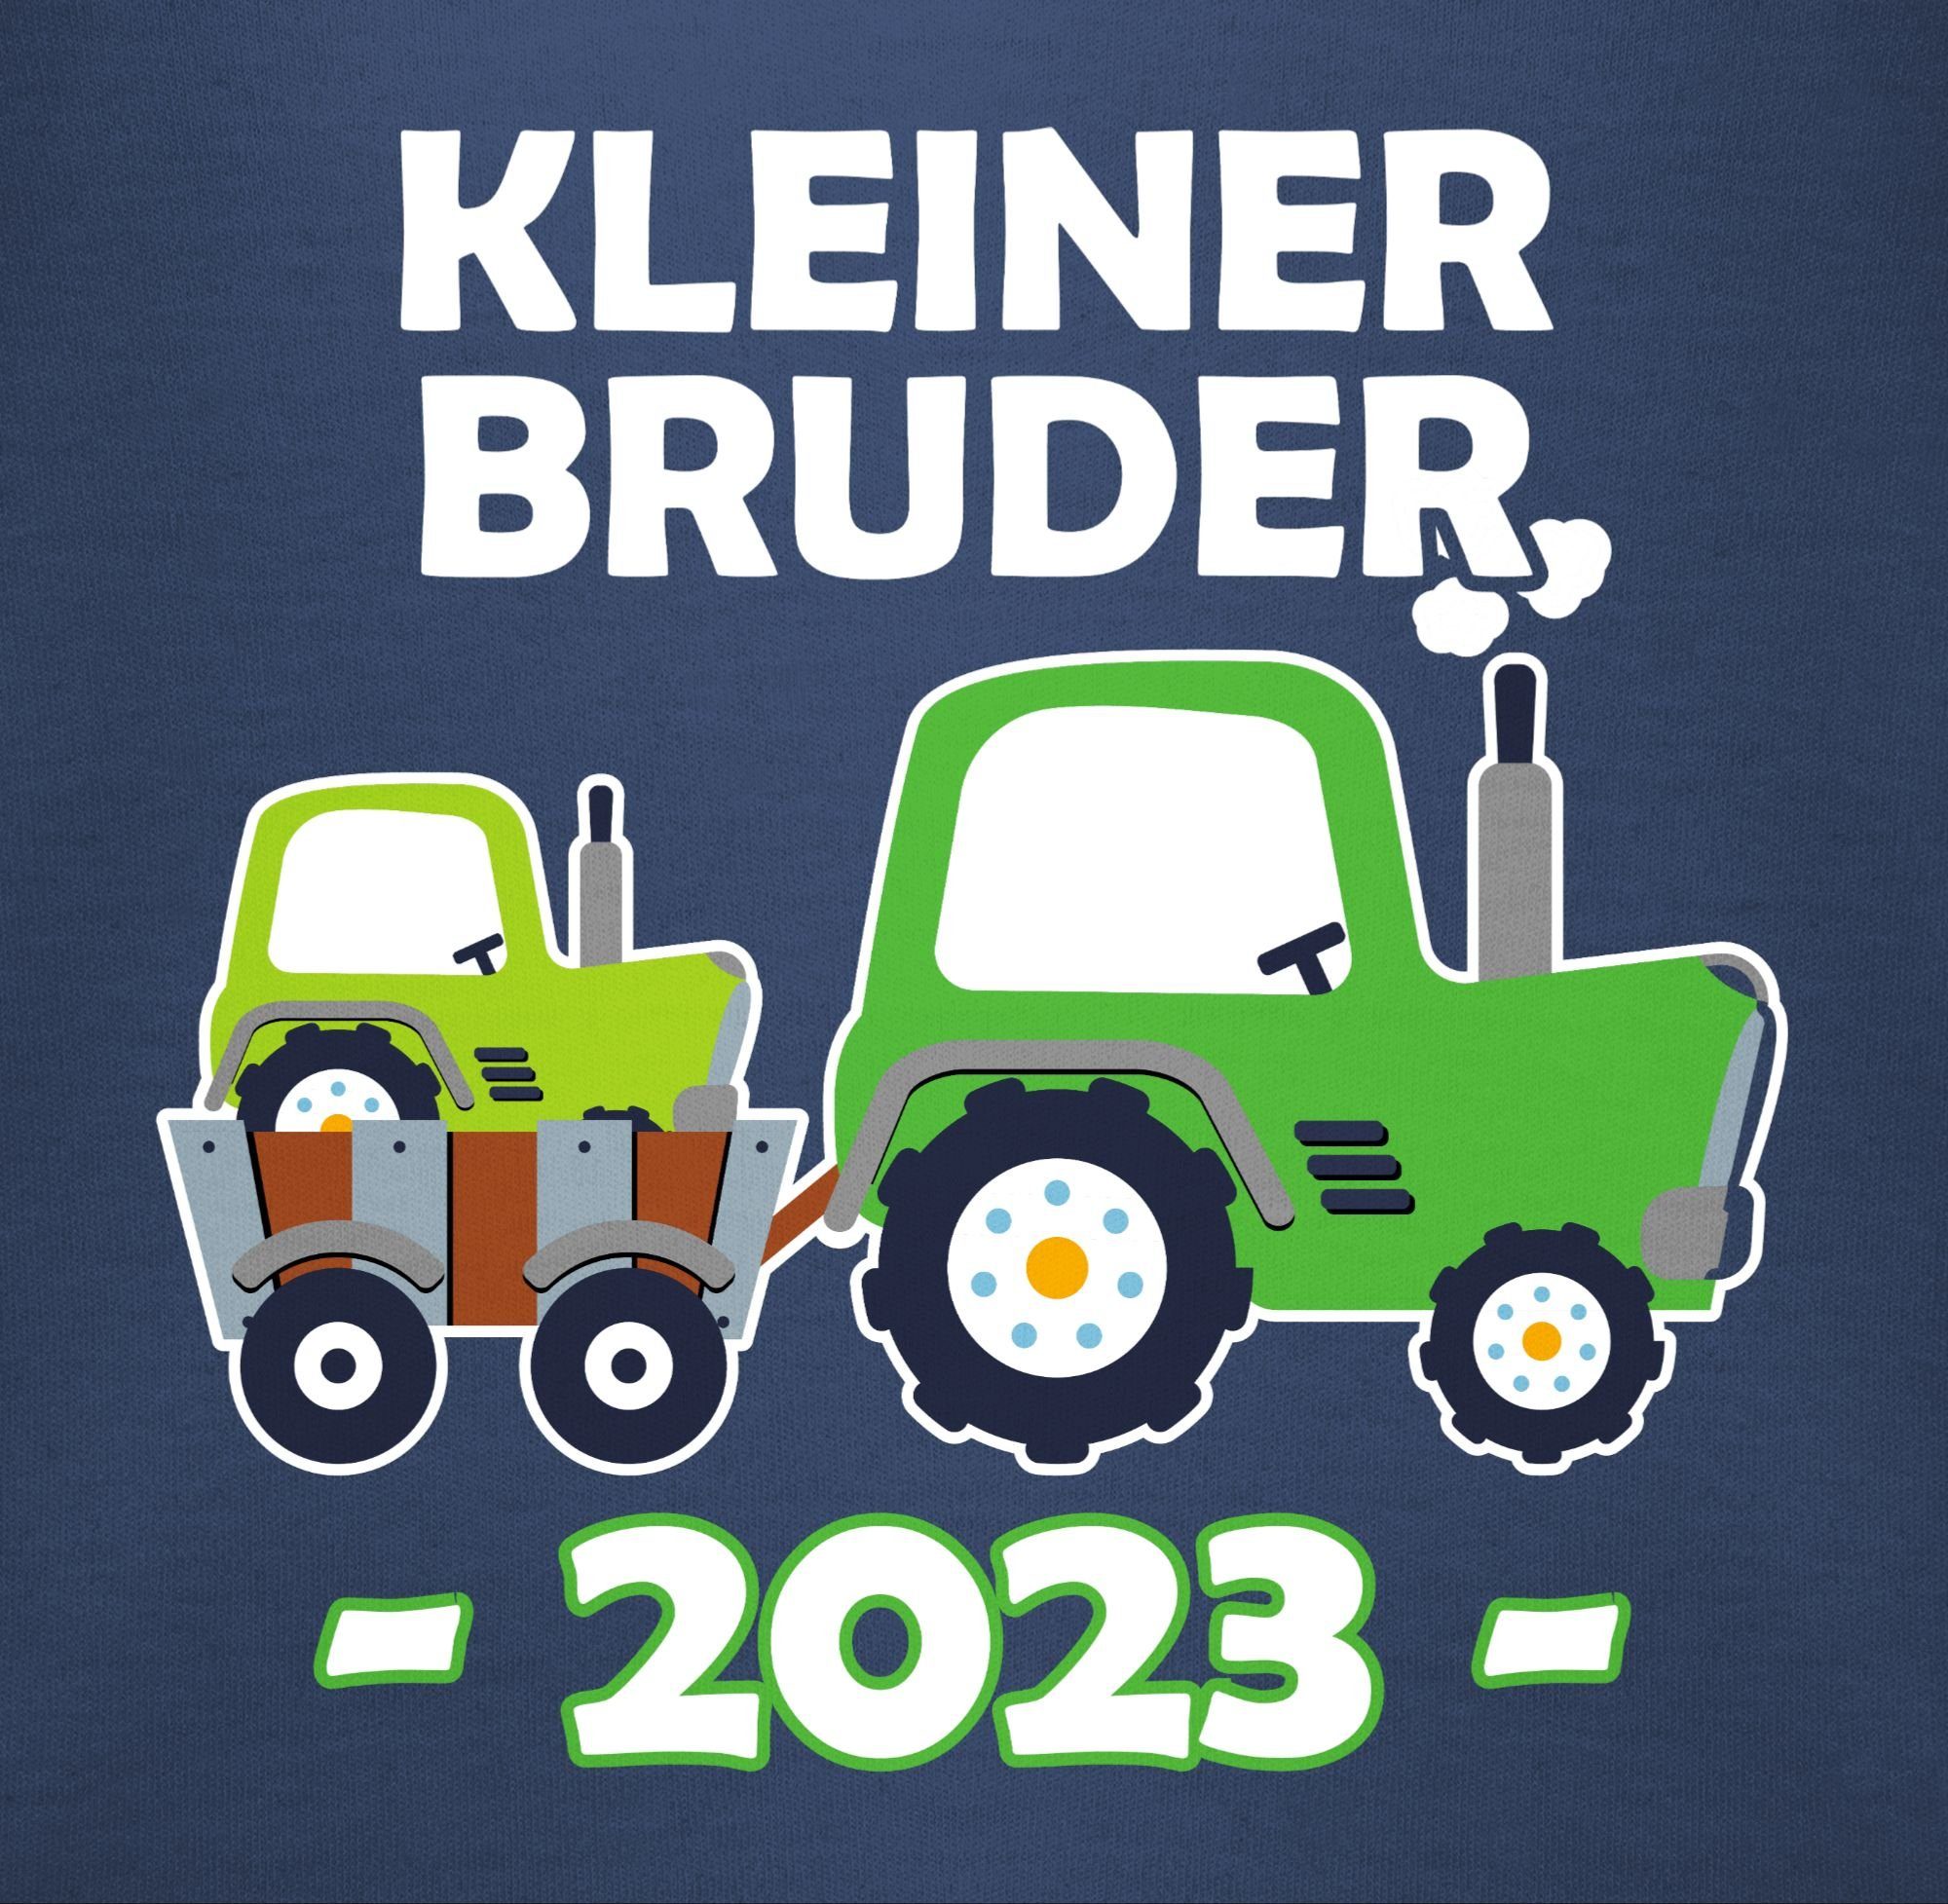 1 Bruder Bruder Kleiner Shirtracer Traktor Blau 2023 Navy Shirtbody Kleiner